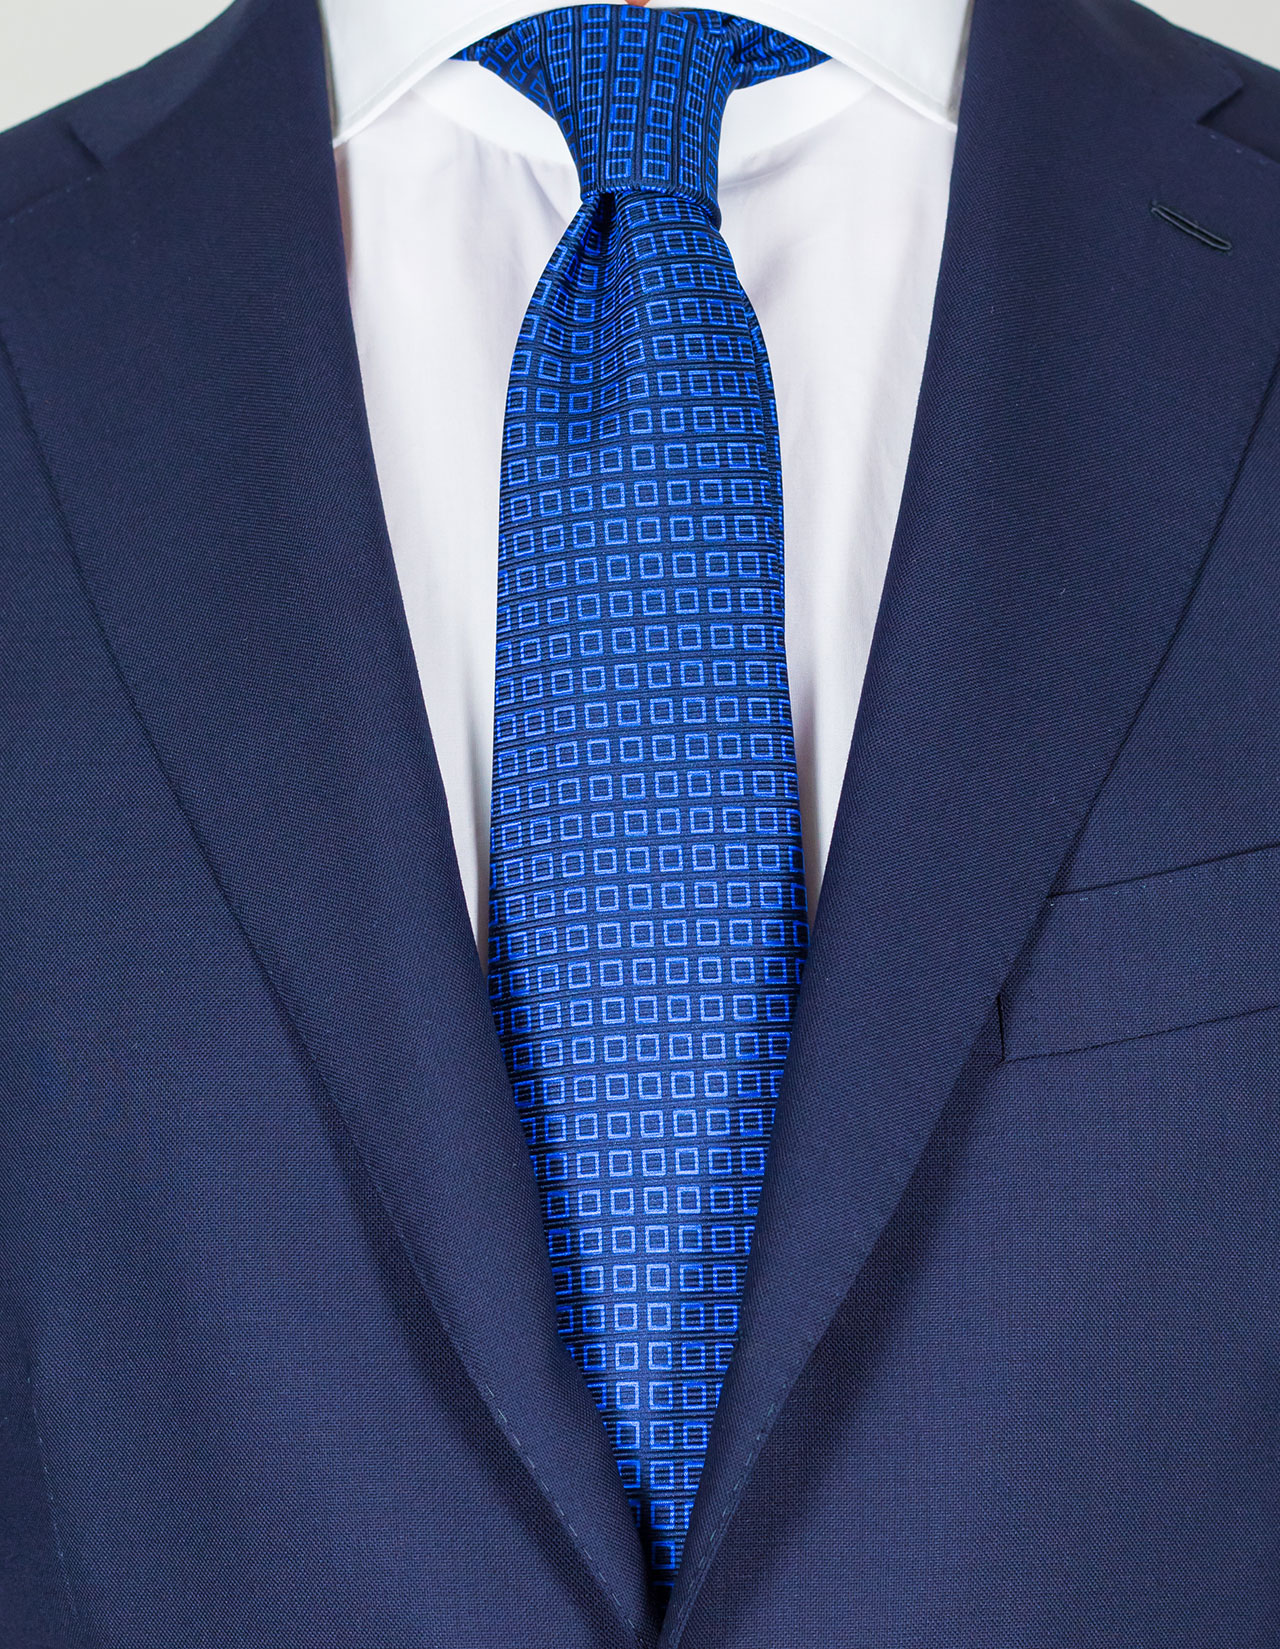 Kiton Krawatte in dunkelblau mit hellblauen Quadraten